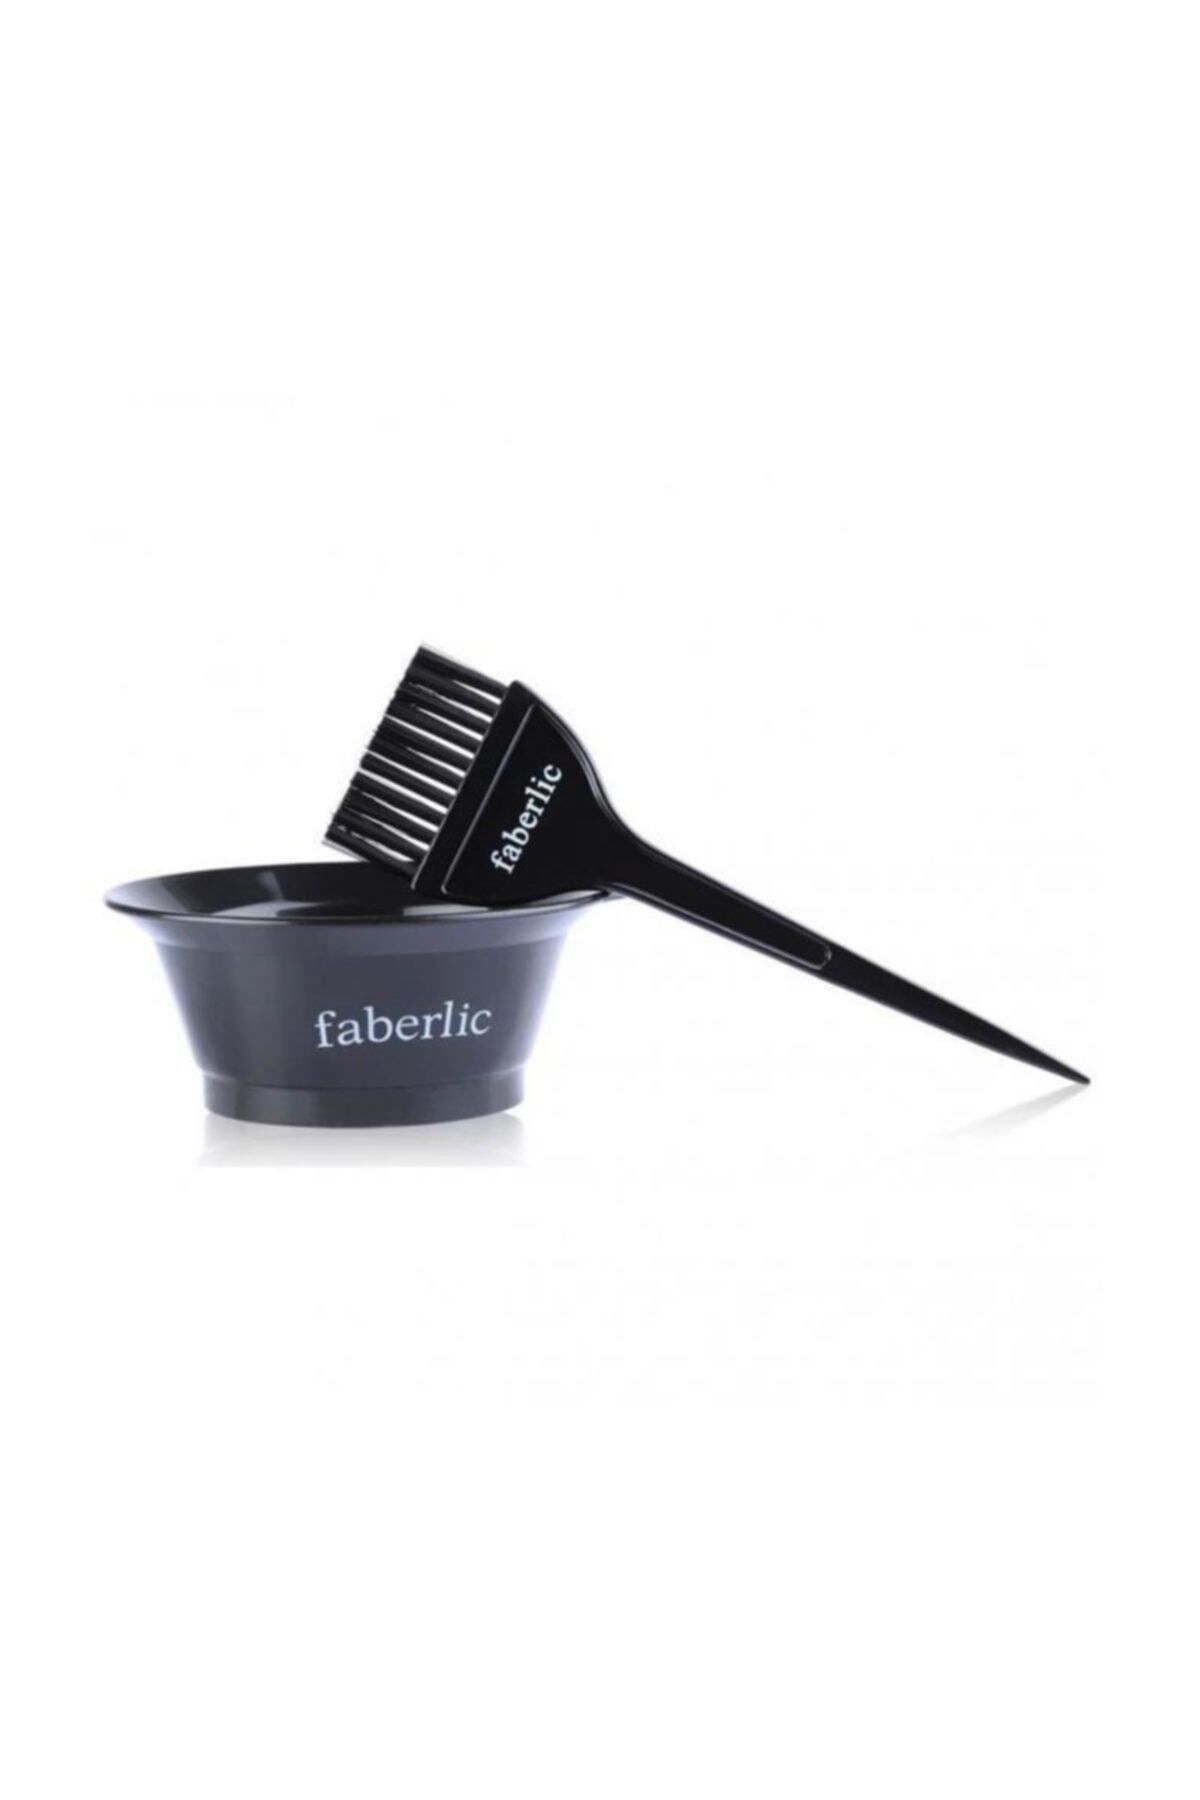 Faberlic Saç Boyama Seti Karıştırma Kabı Ve Fırçası